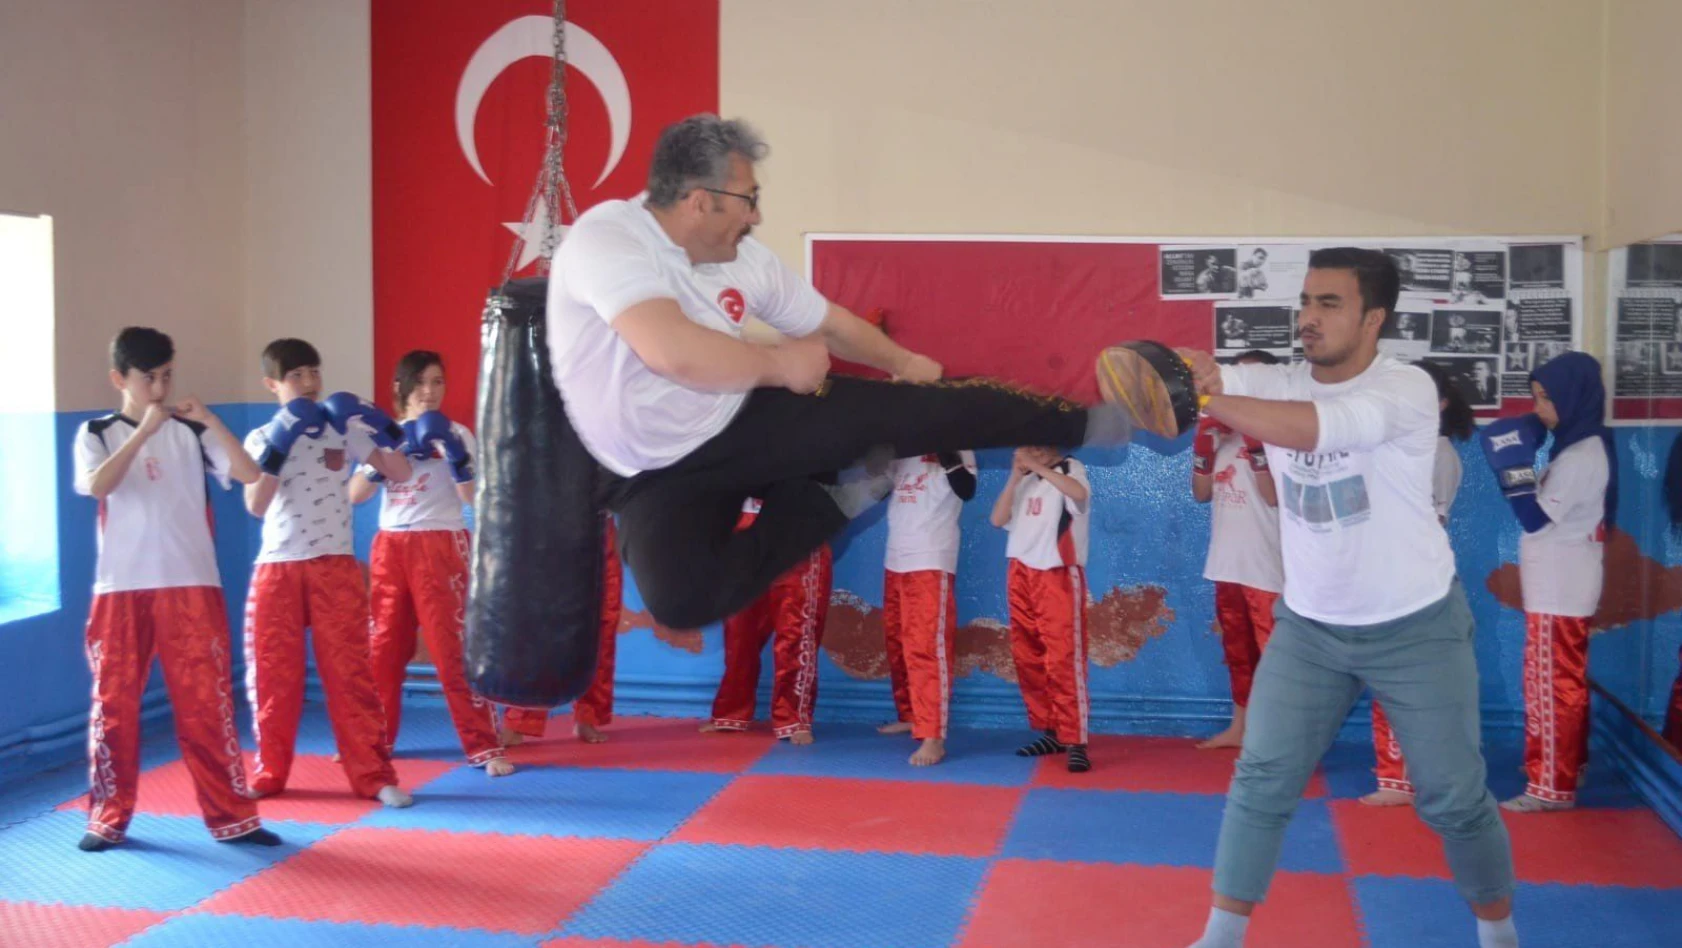 Develi'den Wushu Türkiye Şampiyonasına 3 sporcu katılacak